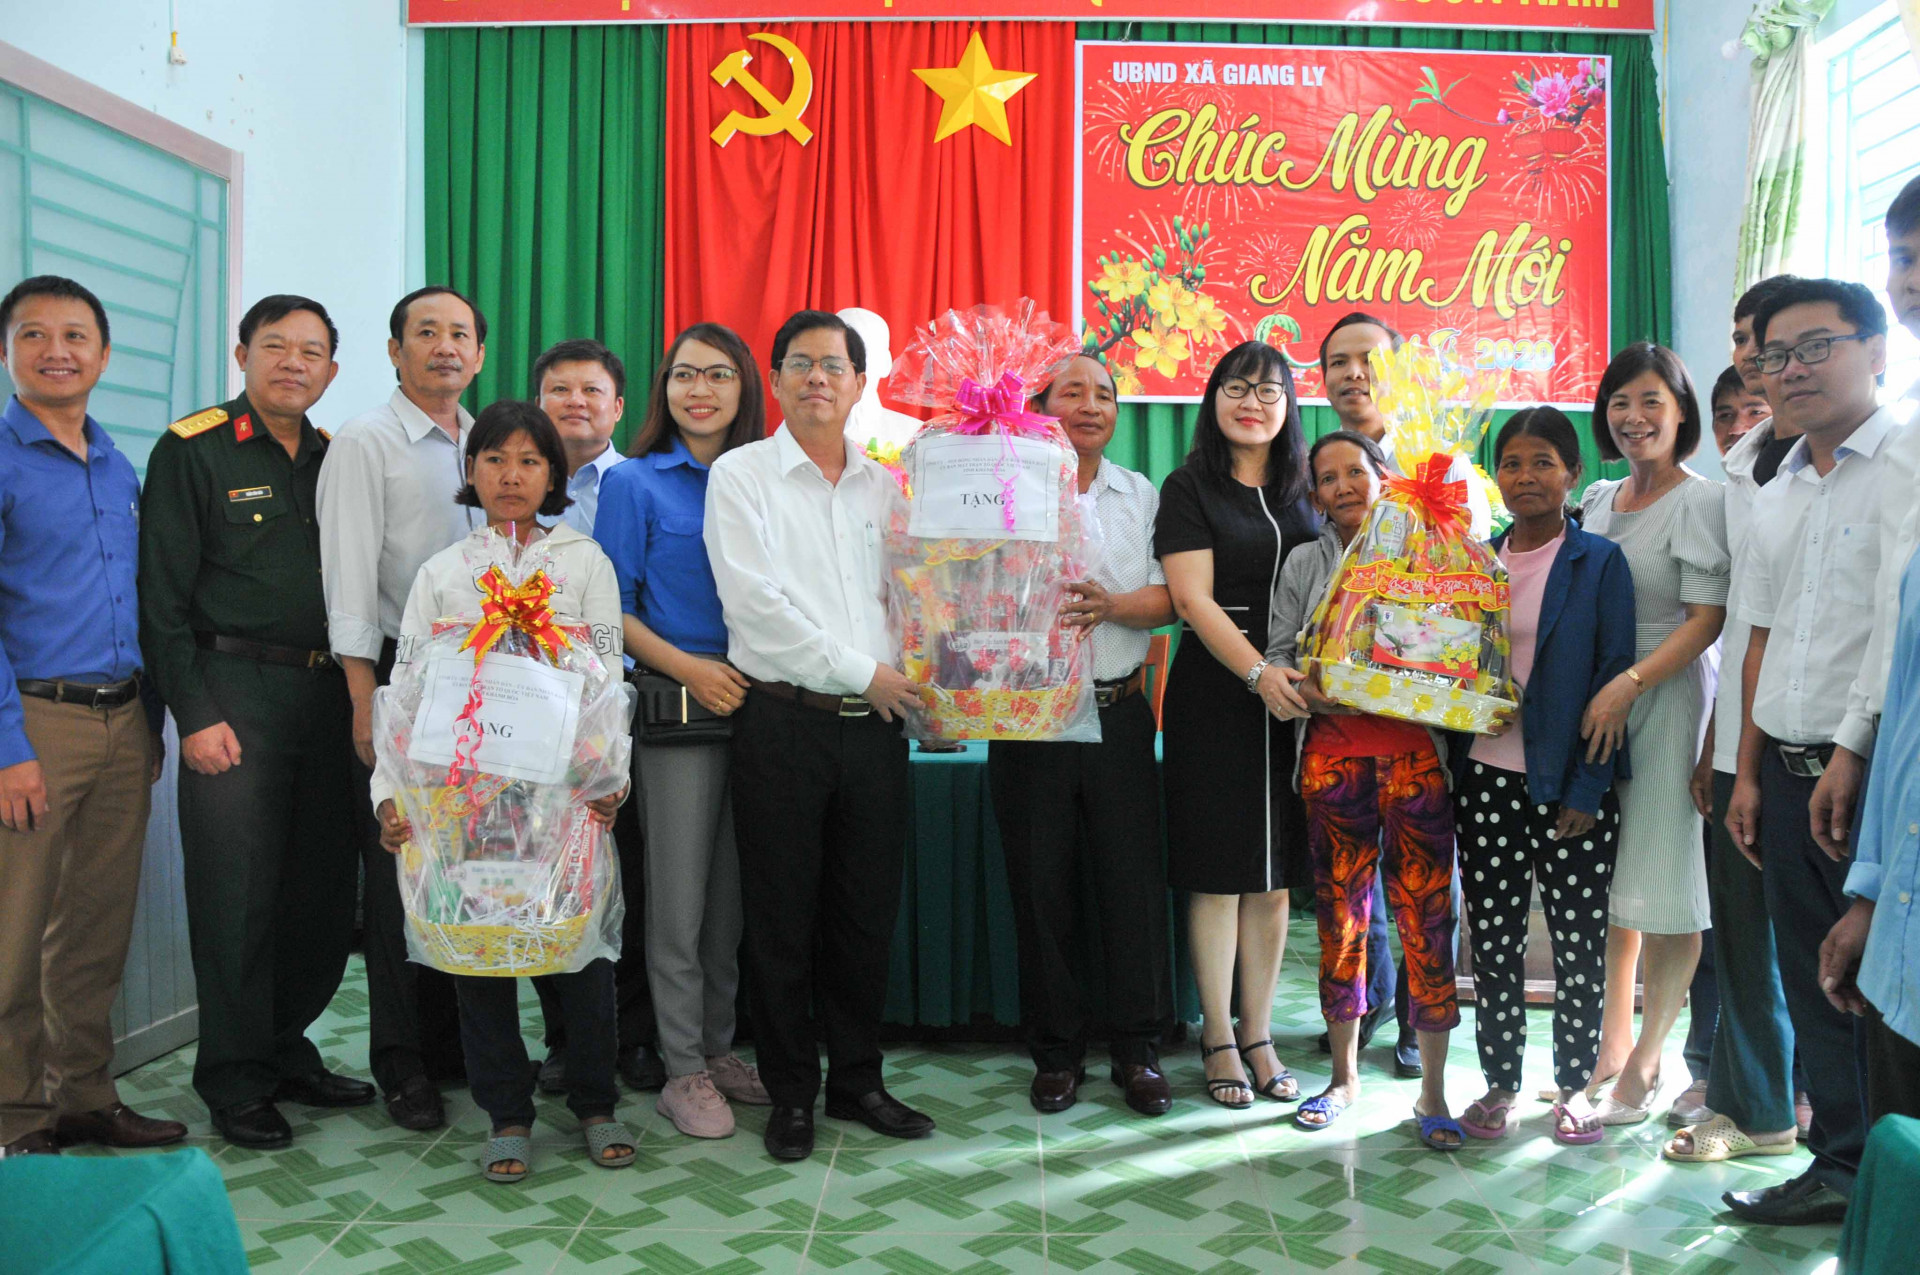 Lãnh đạo tỉnh cùng các đơn vị được phân công giúp đỡ xã Giang Ly trao quà cho người dân